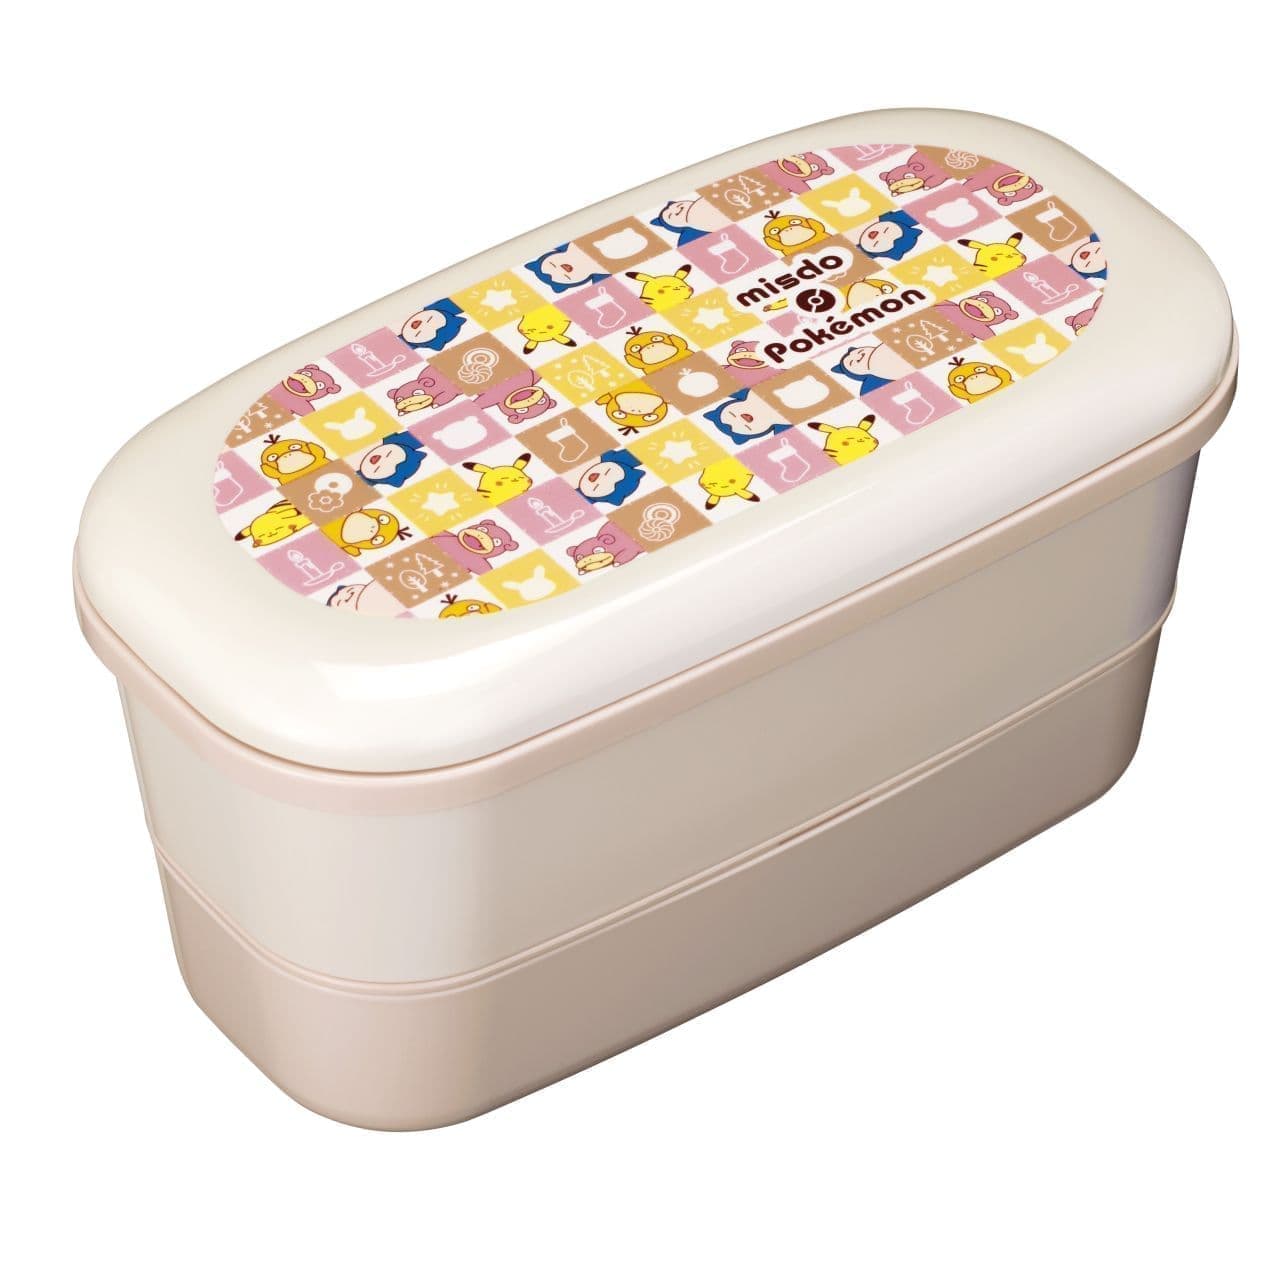 Missed "Kutsurogi Lunch Box